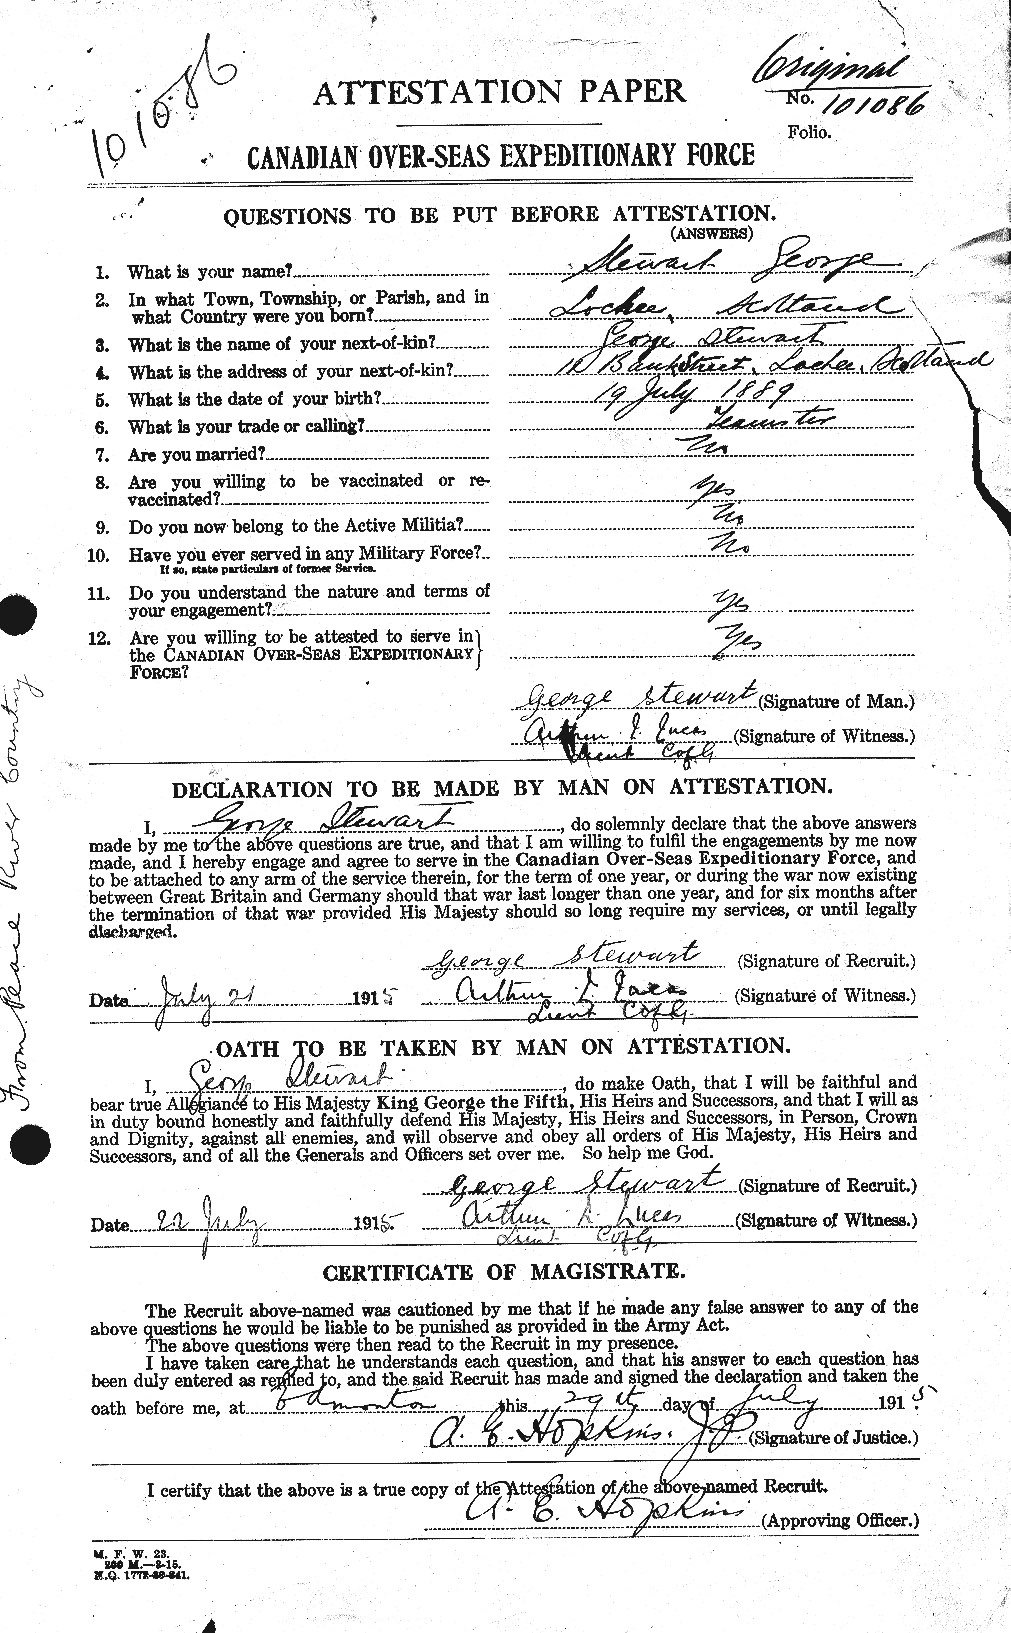 Dossiers du Personnel de la Première Guerre mondiale - CEC 117535a